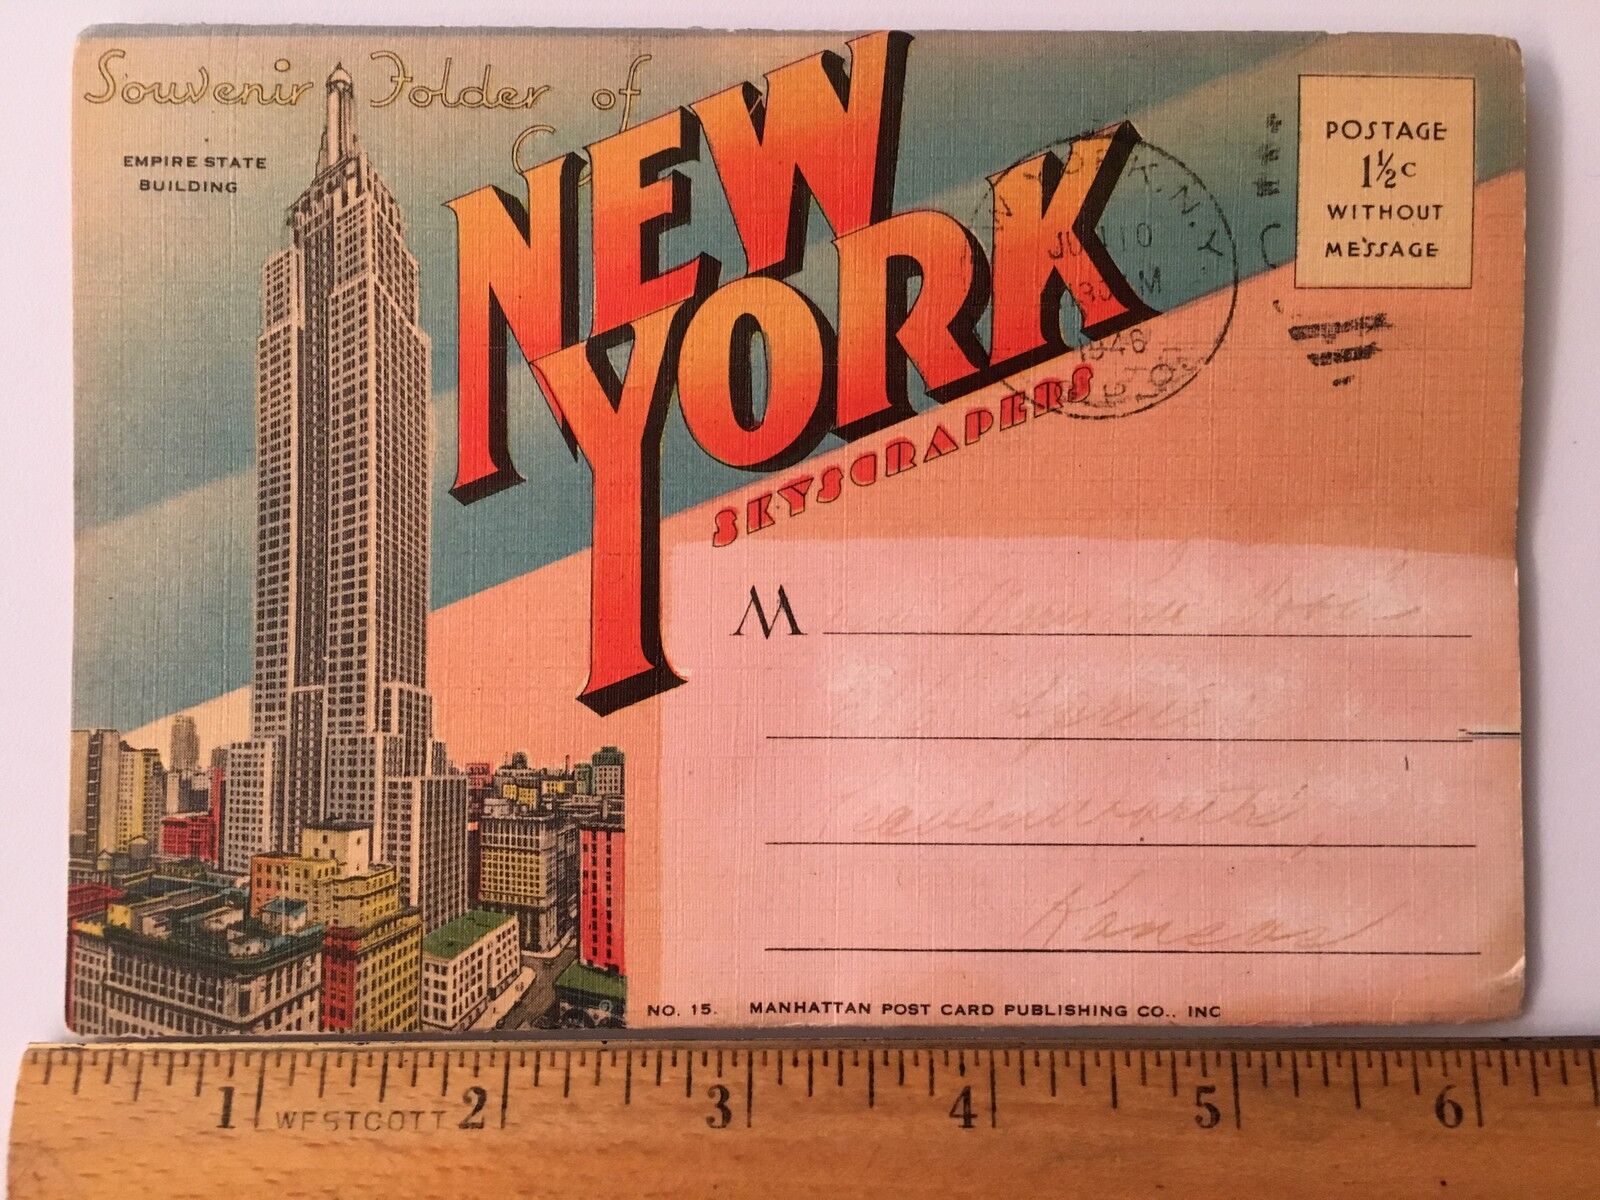 VINTAGE Souvenir Folder NEW YORK SKYSCRAPERS 1946 Postmarked Vintage Color